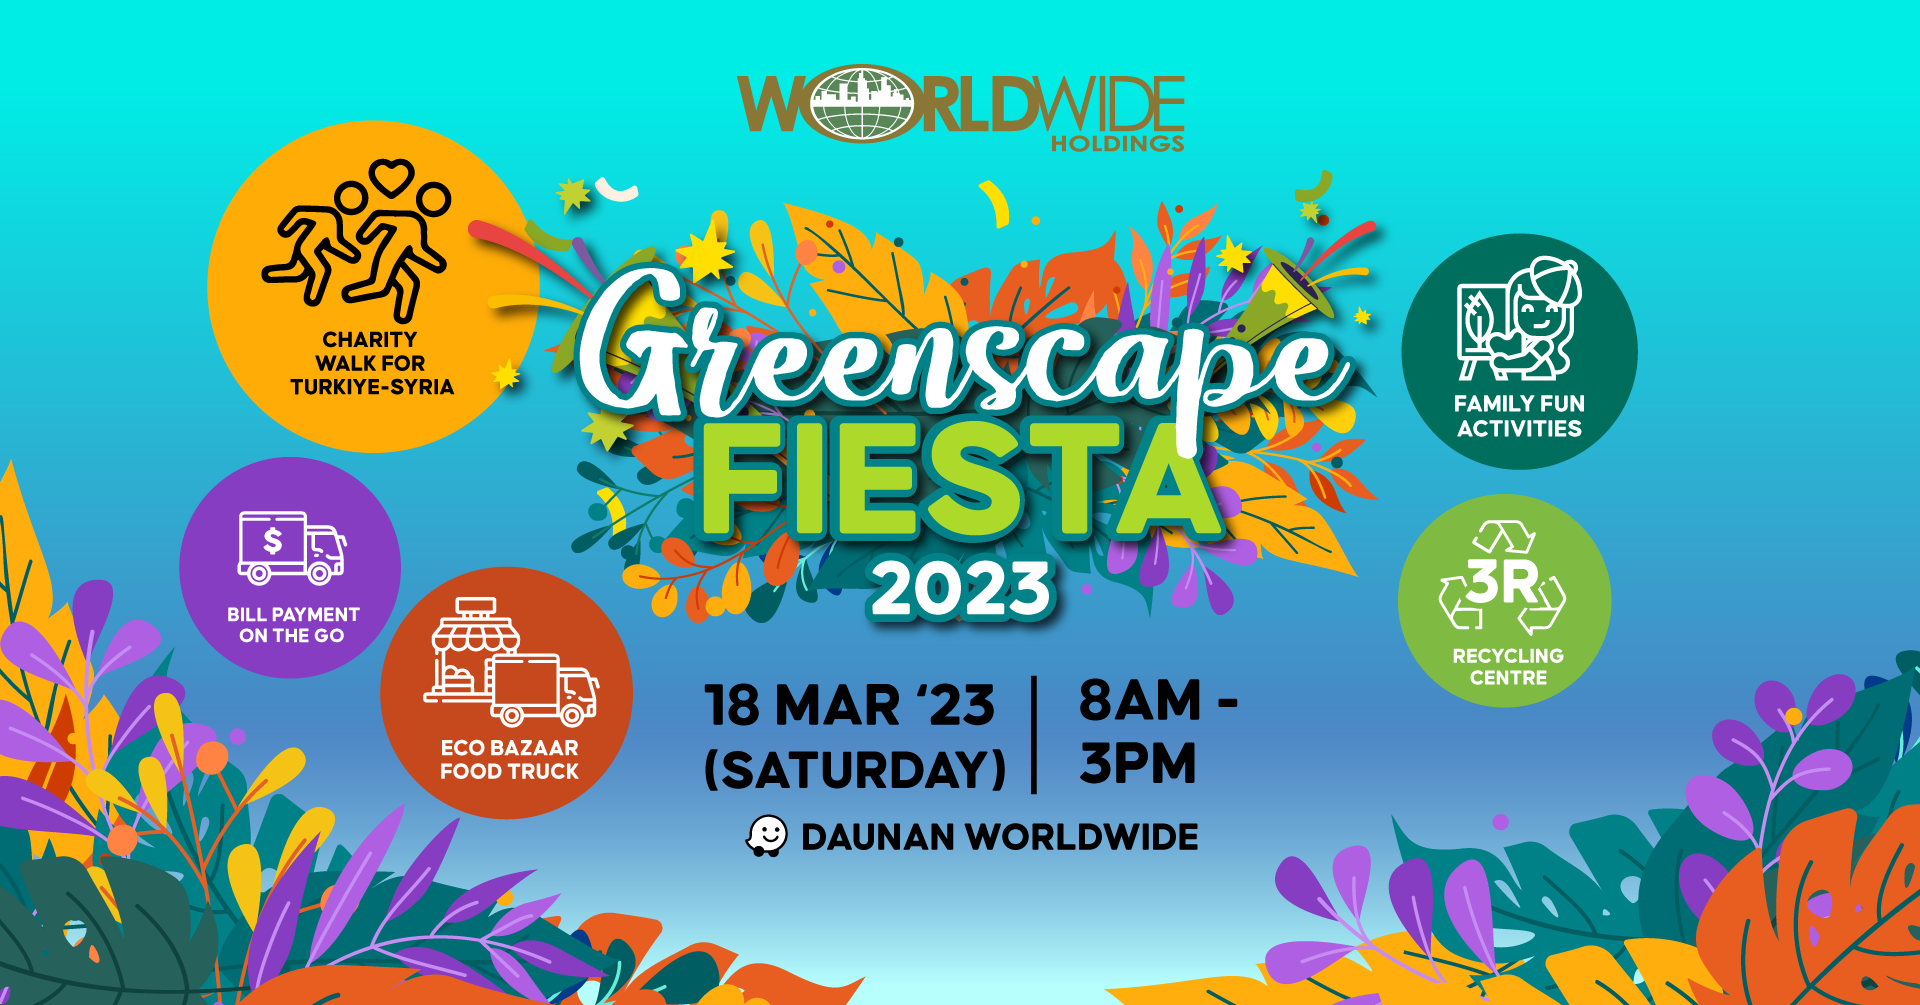 Greenscape Fiesta 2023 - Worldwide Property